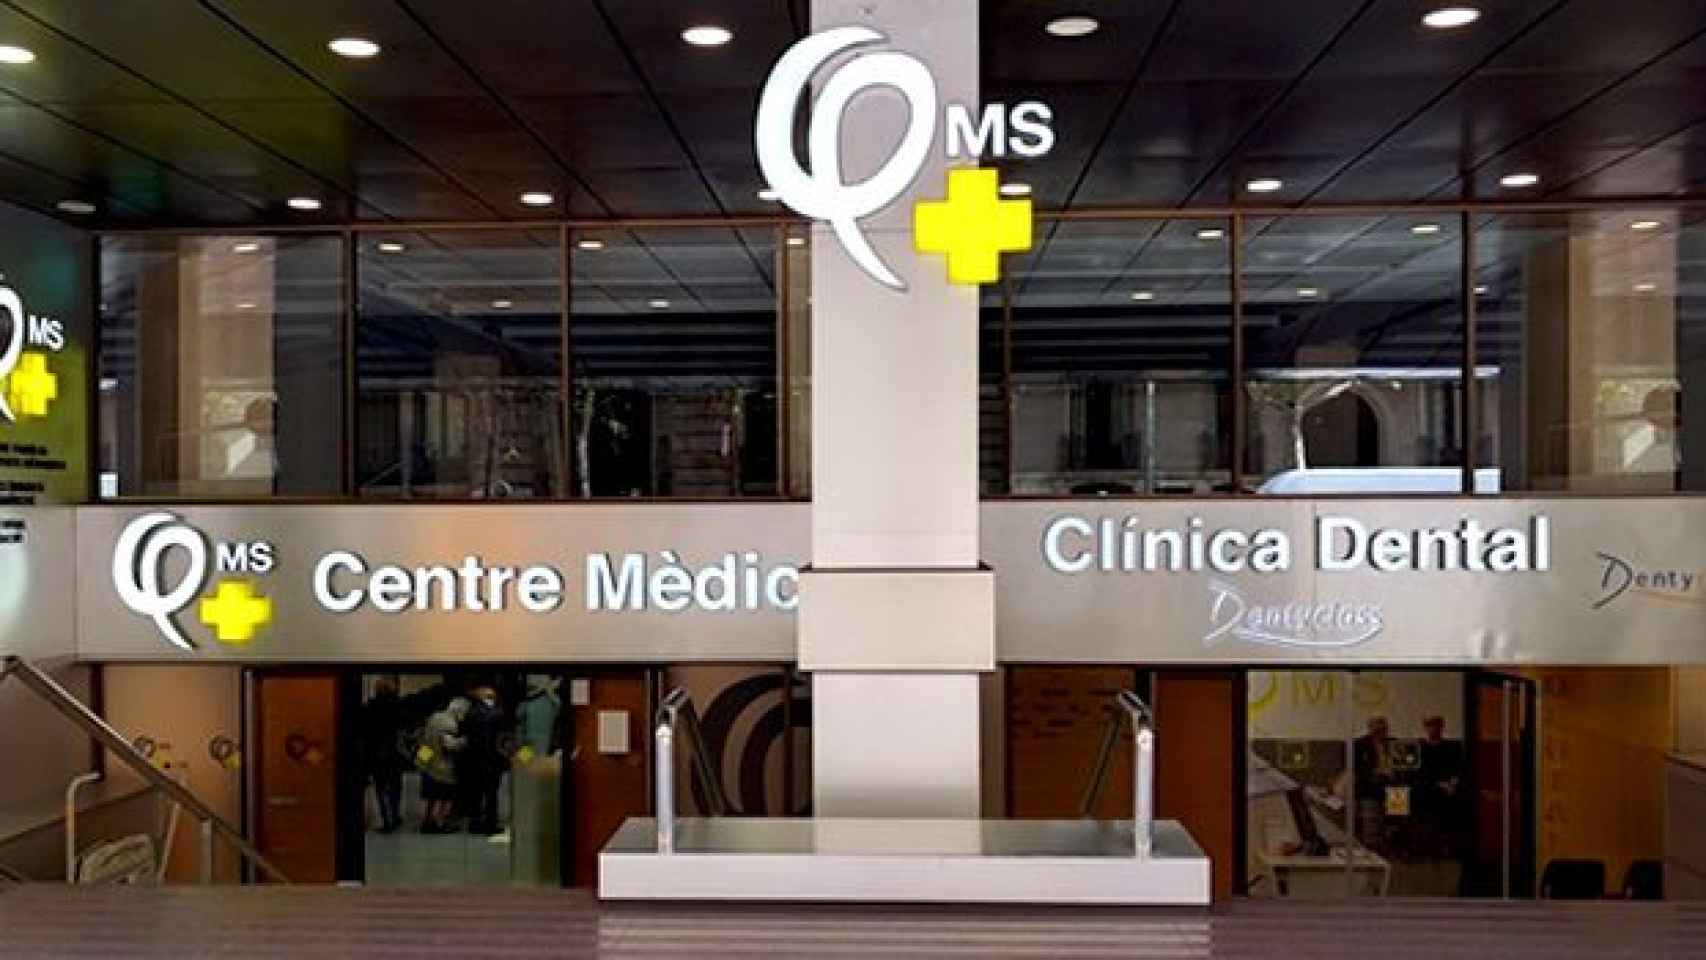 Quality Medical Service (QMS) es un centro sanitario situado en la confluencia de la calle Aribau y avenida Diagonal de Barcelona / CG